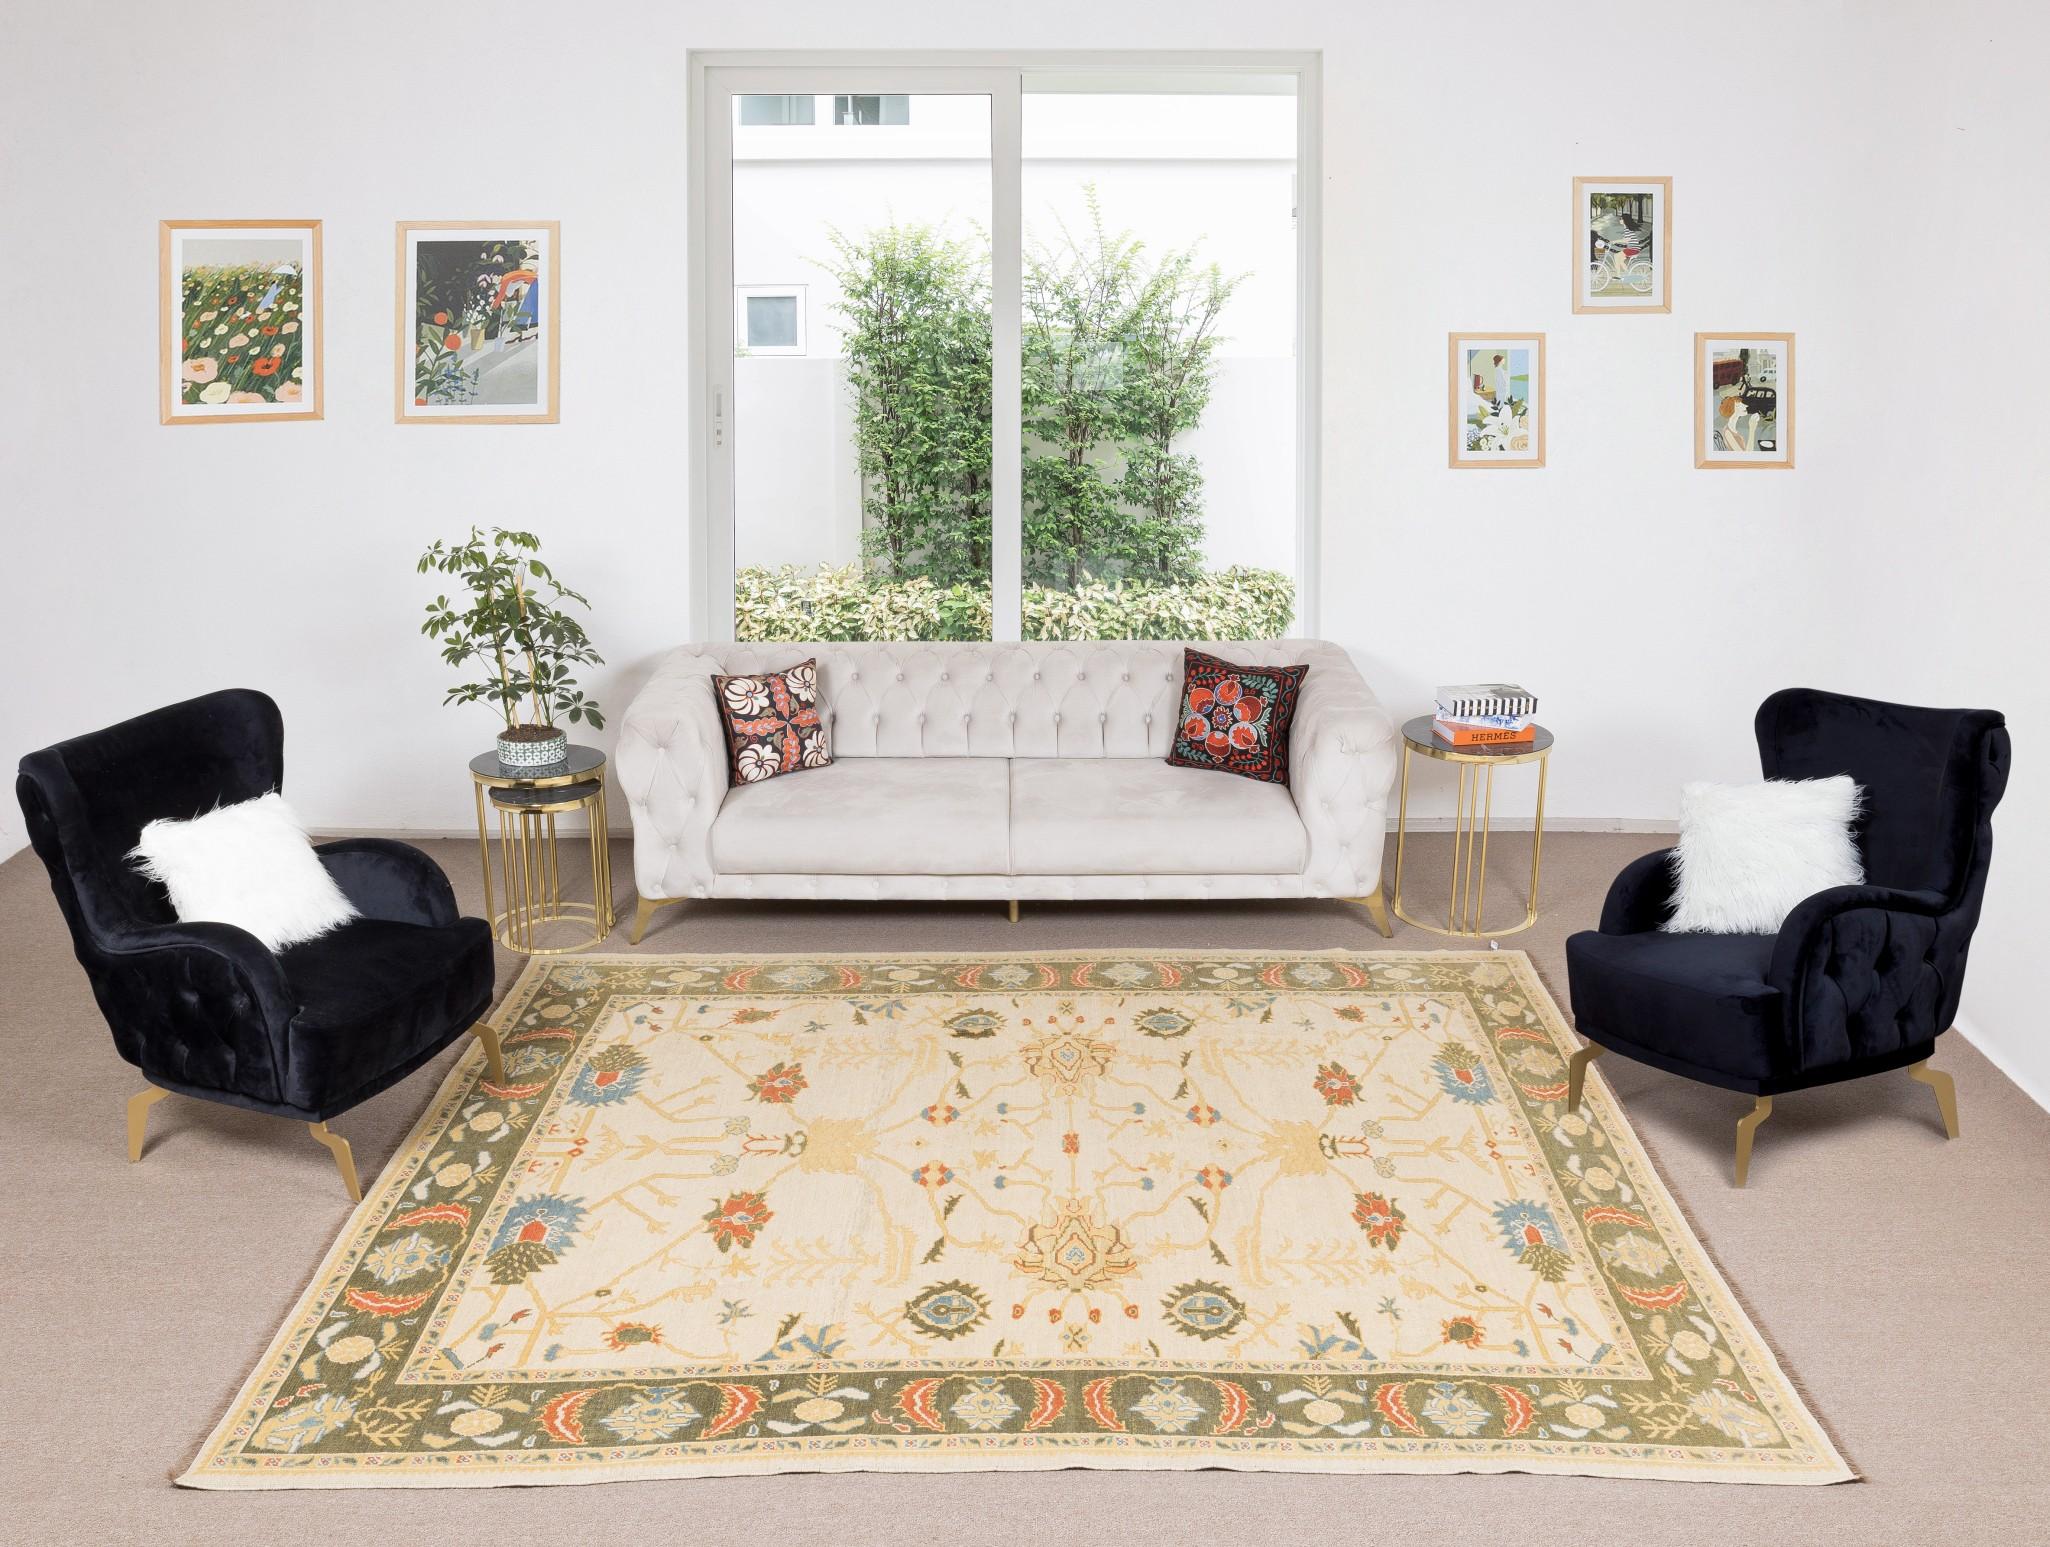 Ein handgeknüpfter zeitgenössischer türkischer Teppich.

Dieser moderne Teppich hat einen gleichmäßigen, mittelhohen Wollflor auf Wollbasis.

Es wird aus erstklassigen handgesponnenen Schafen und natürlichen Farbstoffen hergestellt, d.h. aus